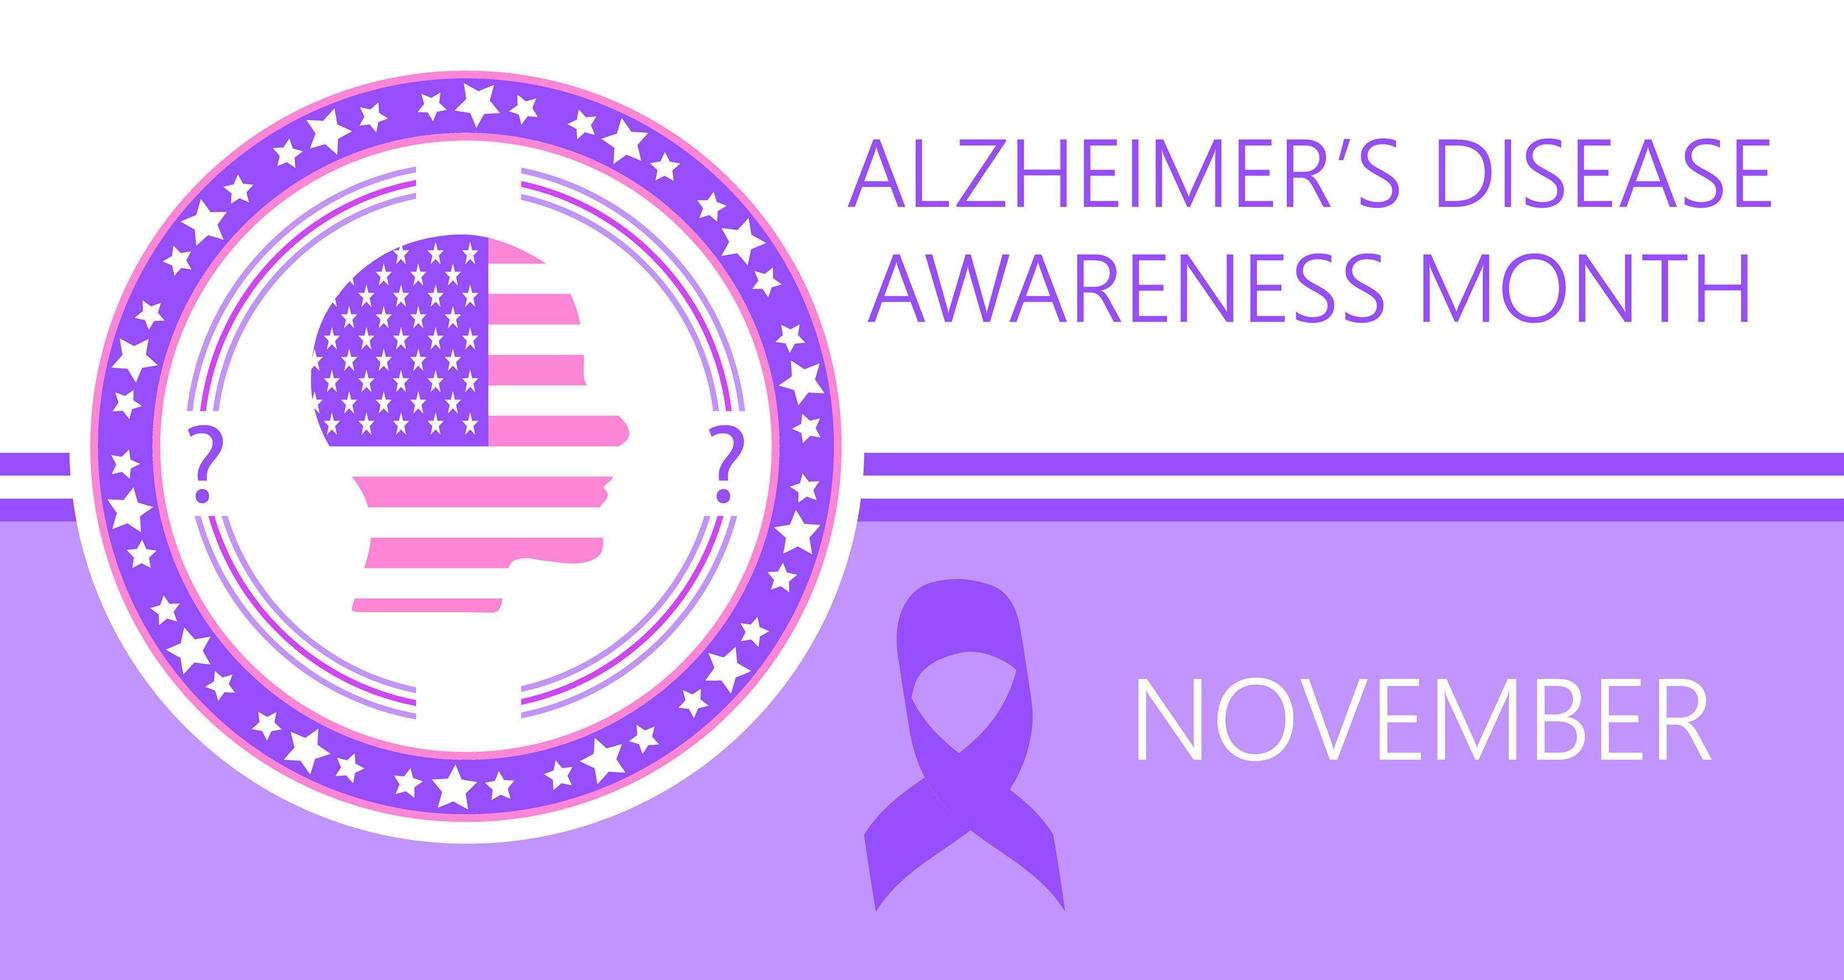 El mes de concientización sobre la enfermedad de Alzheimer se organiza en noviembre en EE. UU. vector